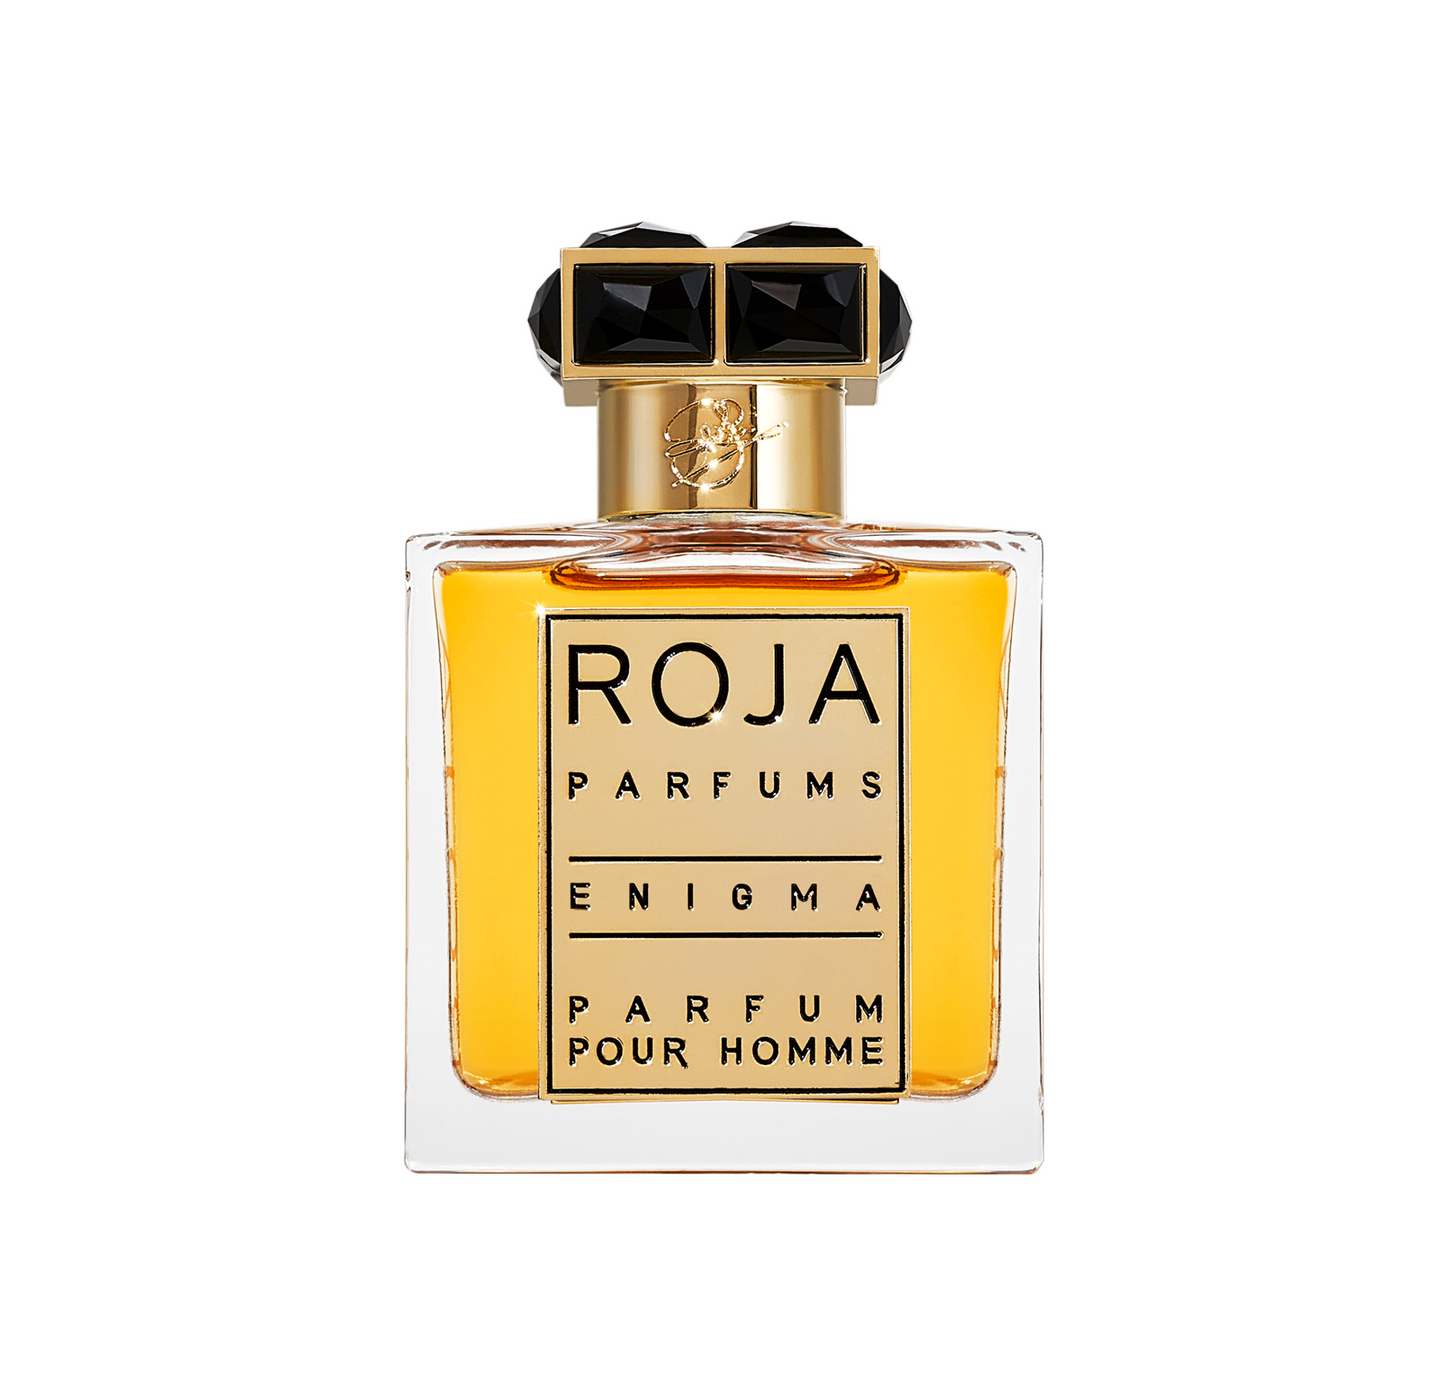 Enigma Pour Homme Parfum Roja Parfums Sample 2ml